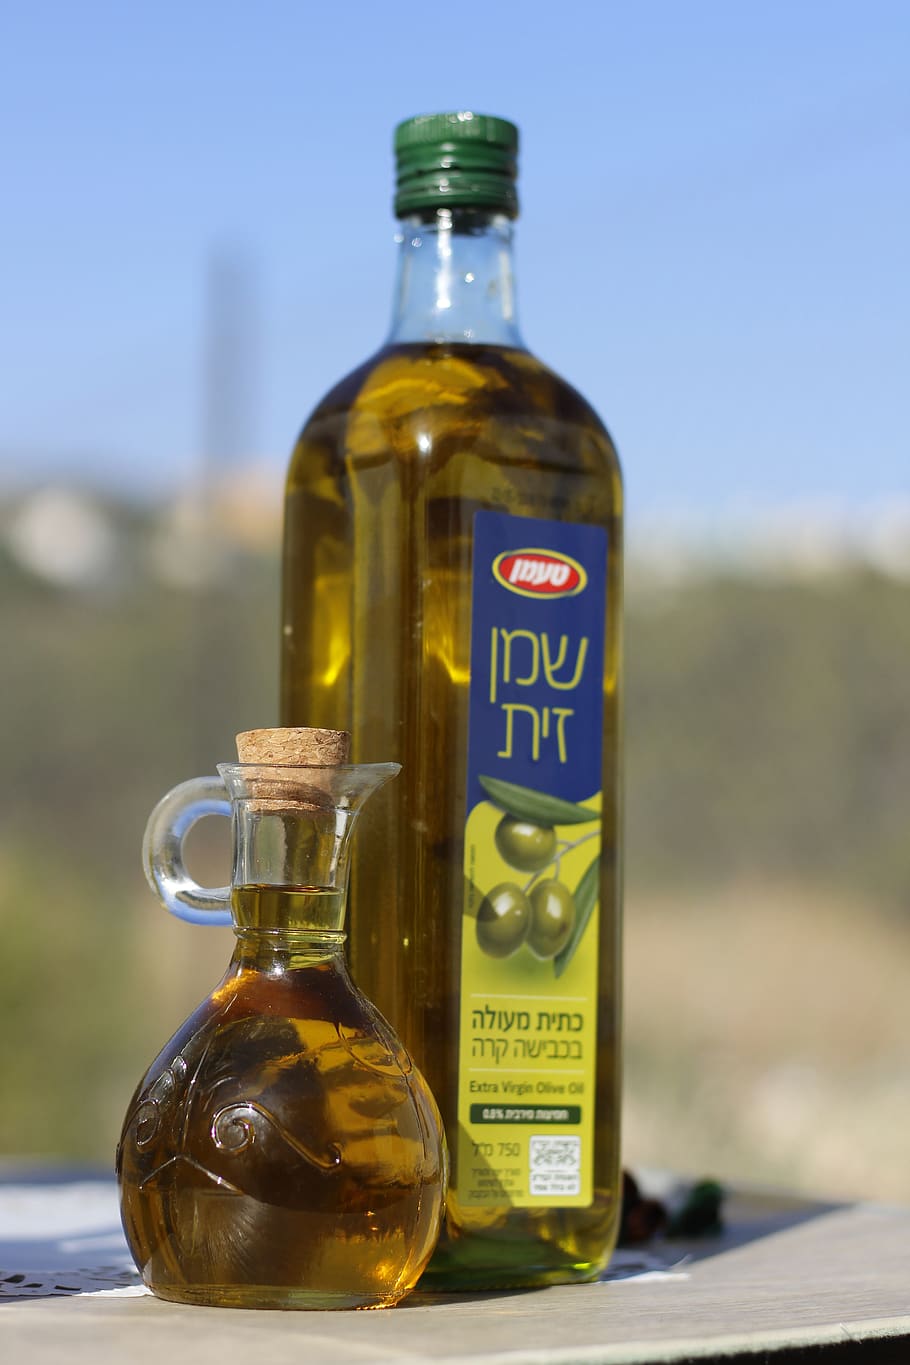 oliva, aceite, en botella y jarra, botella, contenedor, enfoque en primer plano, vidrio - material, comida y bebida, primer plano, refresco